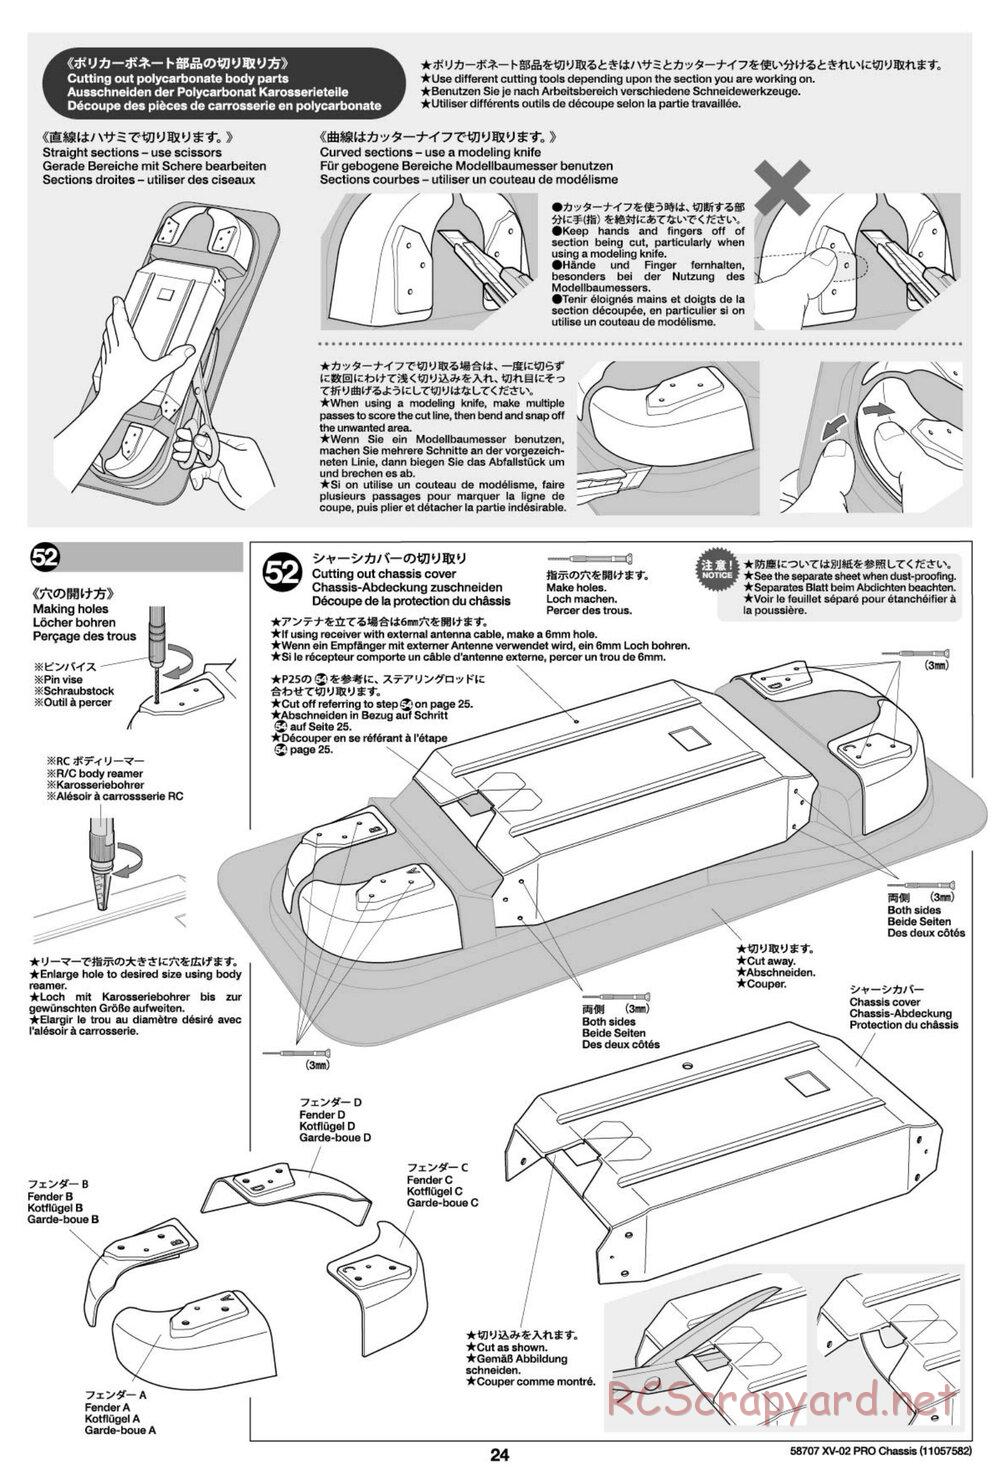 Tamiya - XV-02 Pro Chassis - Manual - Page 24